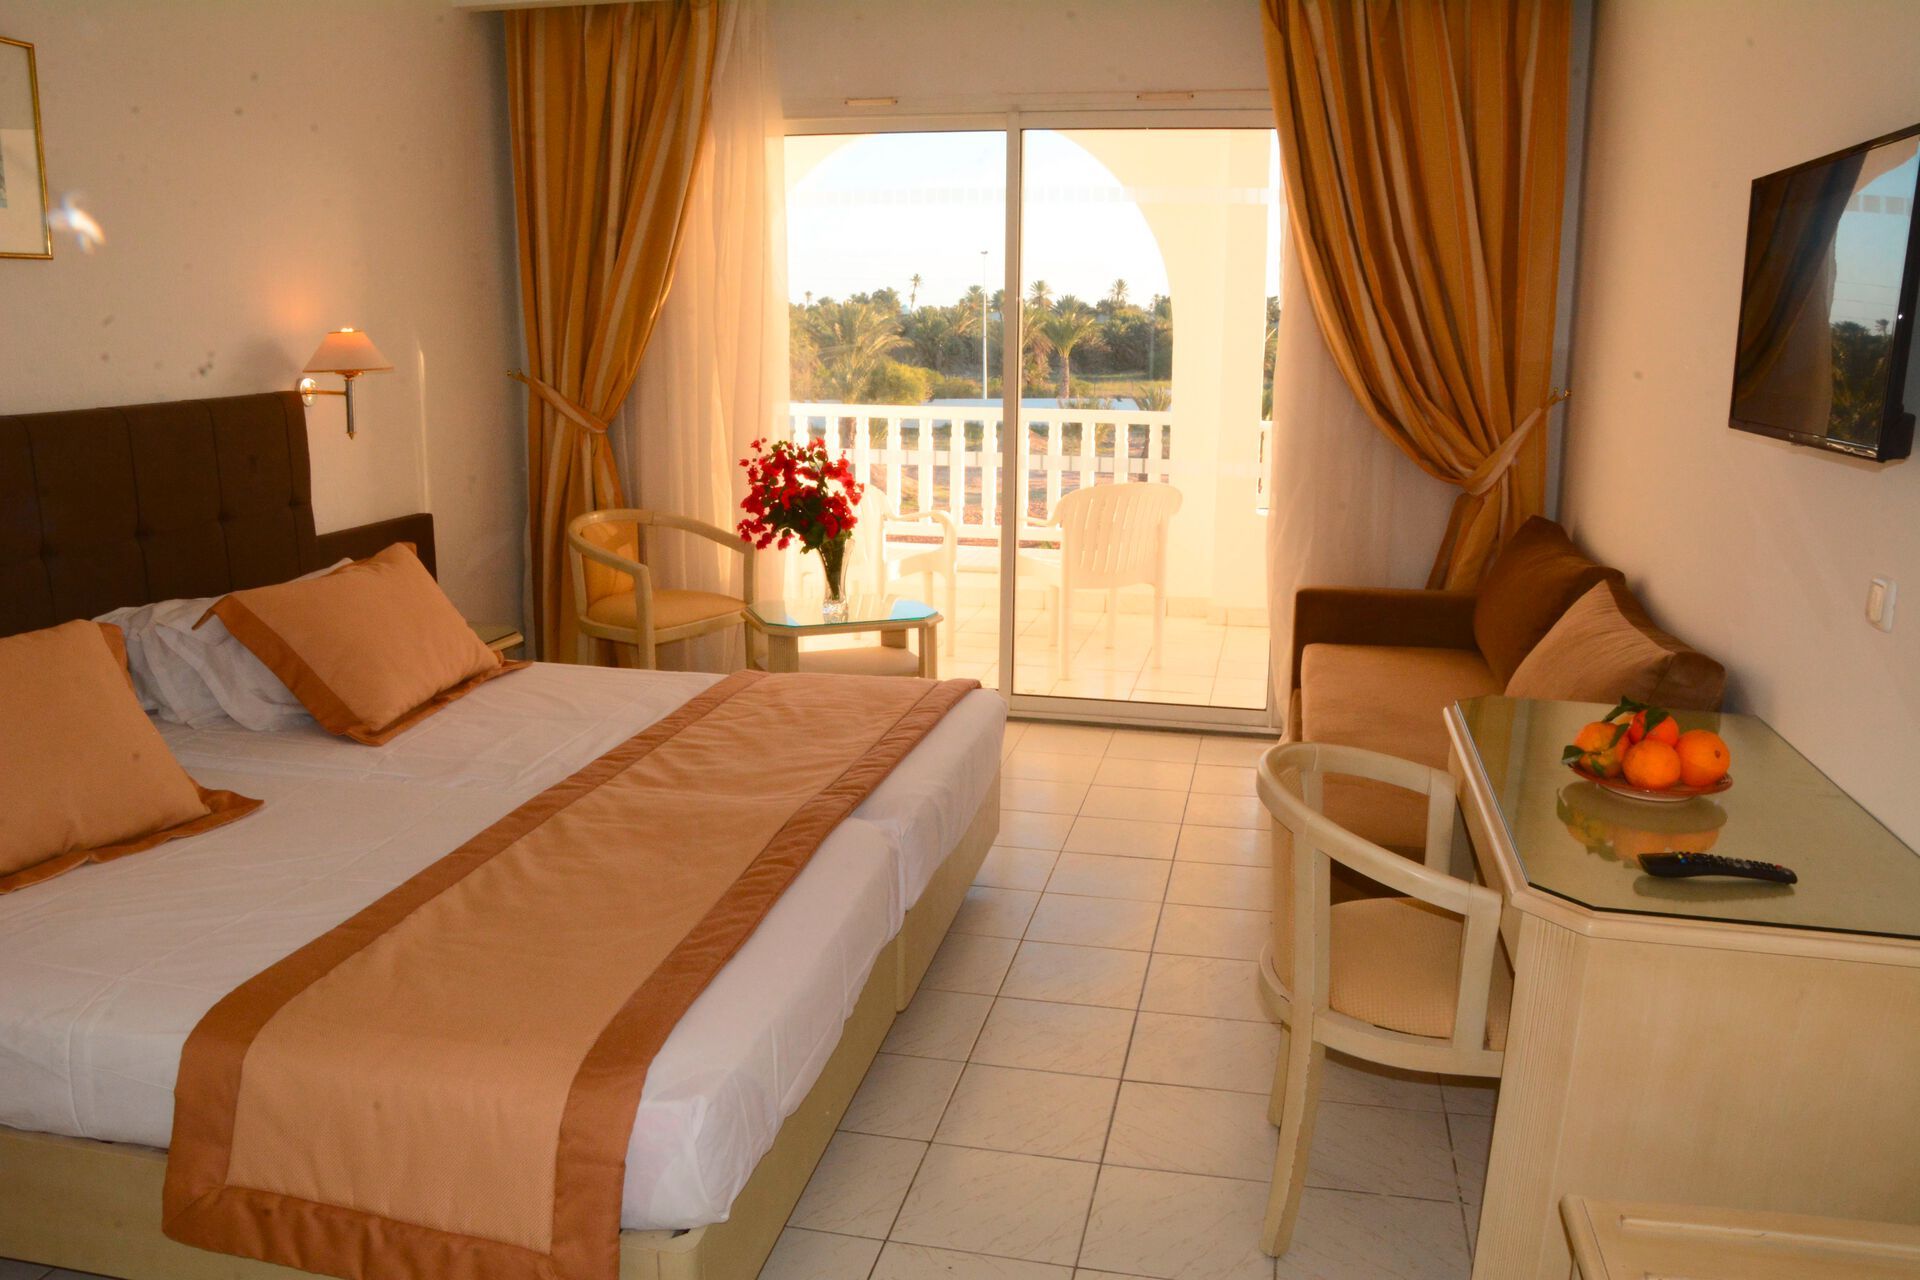 Tunisie - Djerba - Hotel Djerba Golf Resort & Spa 4*